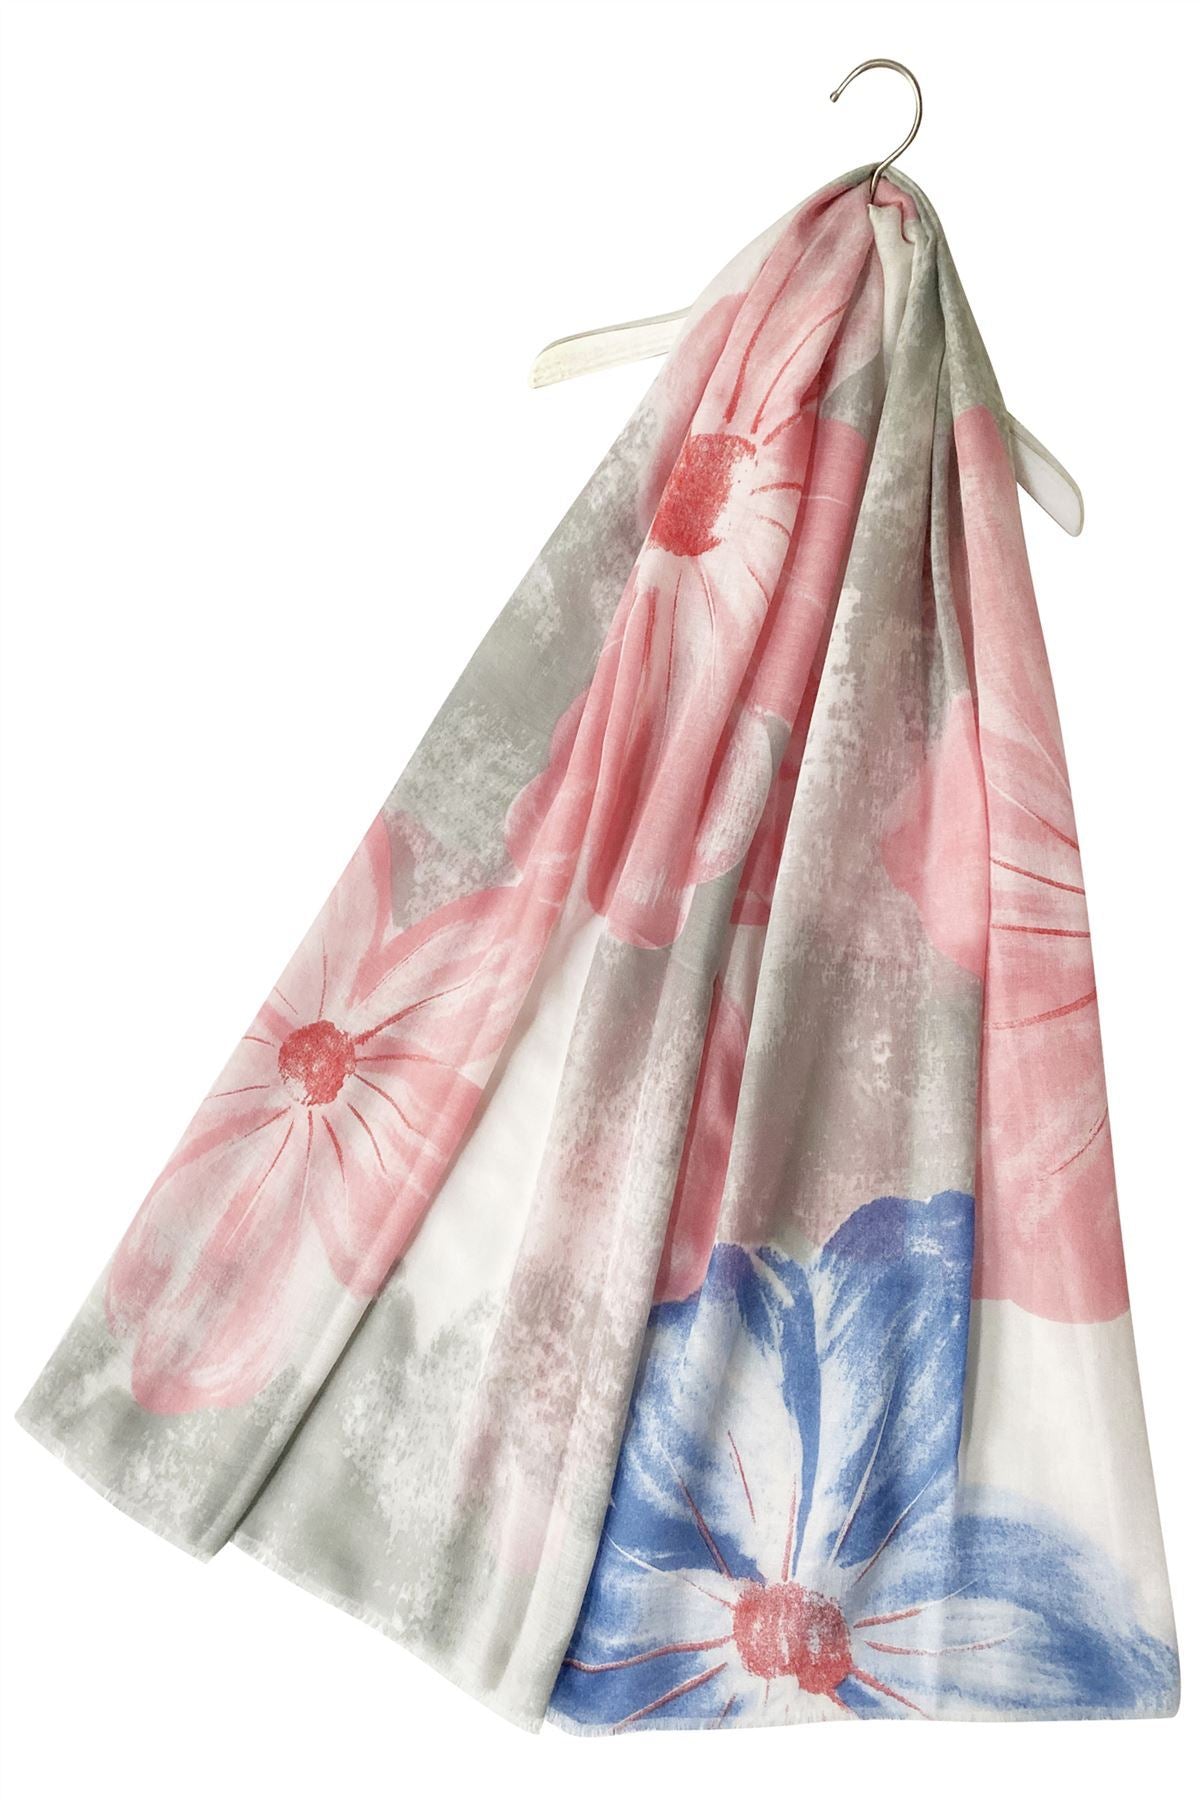 Bavlněná Šála-šátek, 85 cm x 180 cm, Květinový vzor, Korál